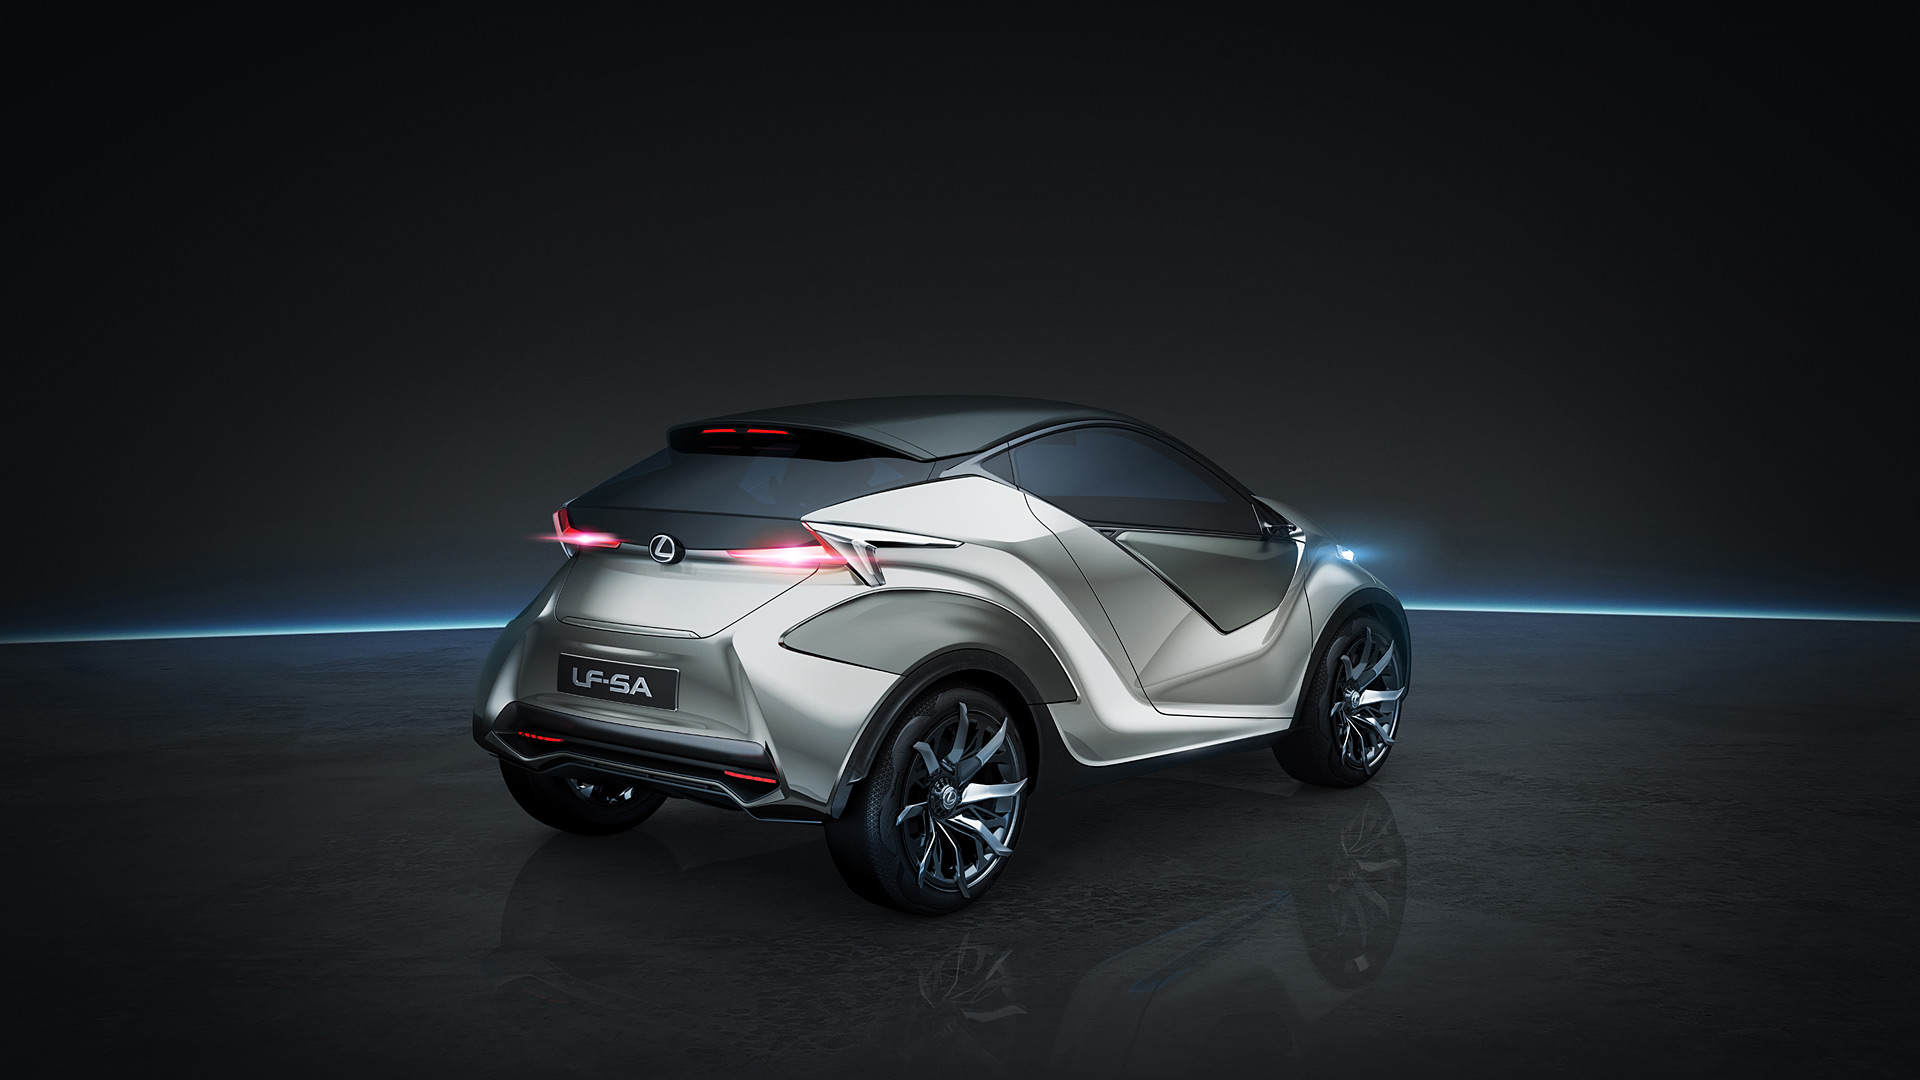  2015 Lexus LF-SA Concept Wallpaper.